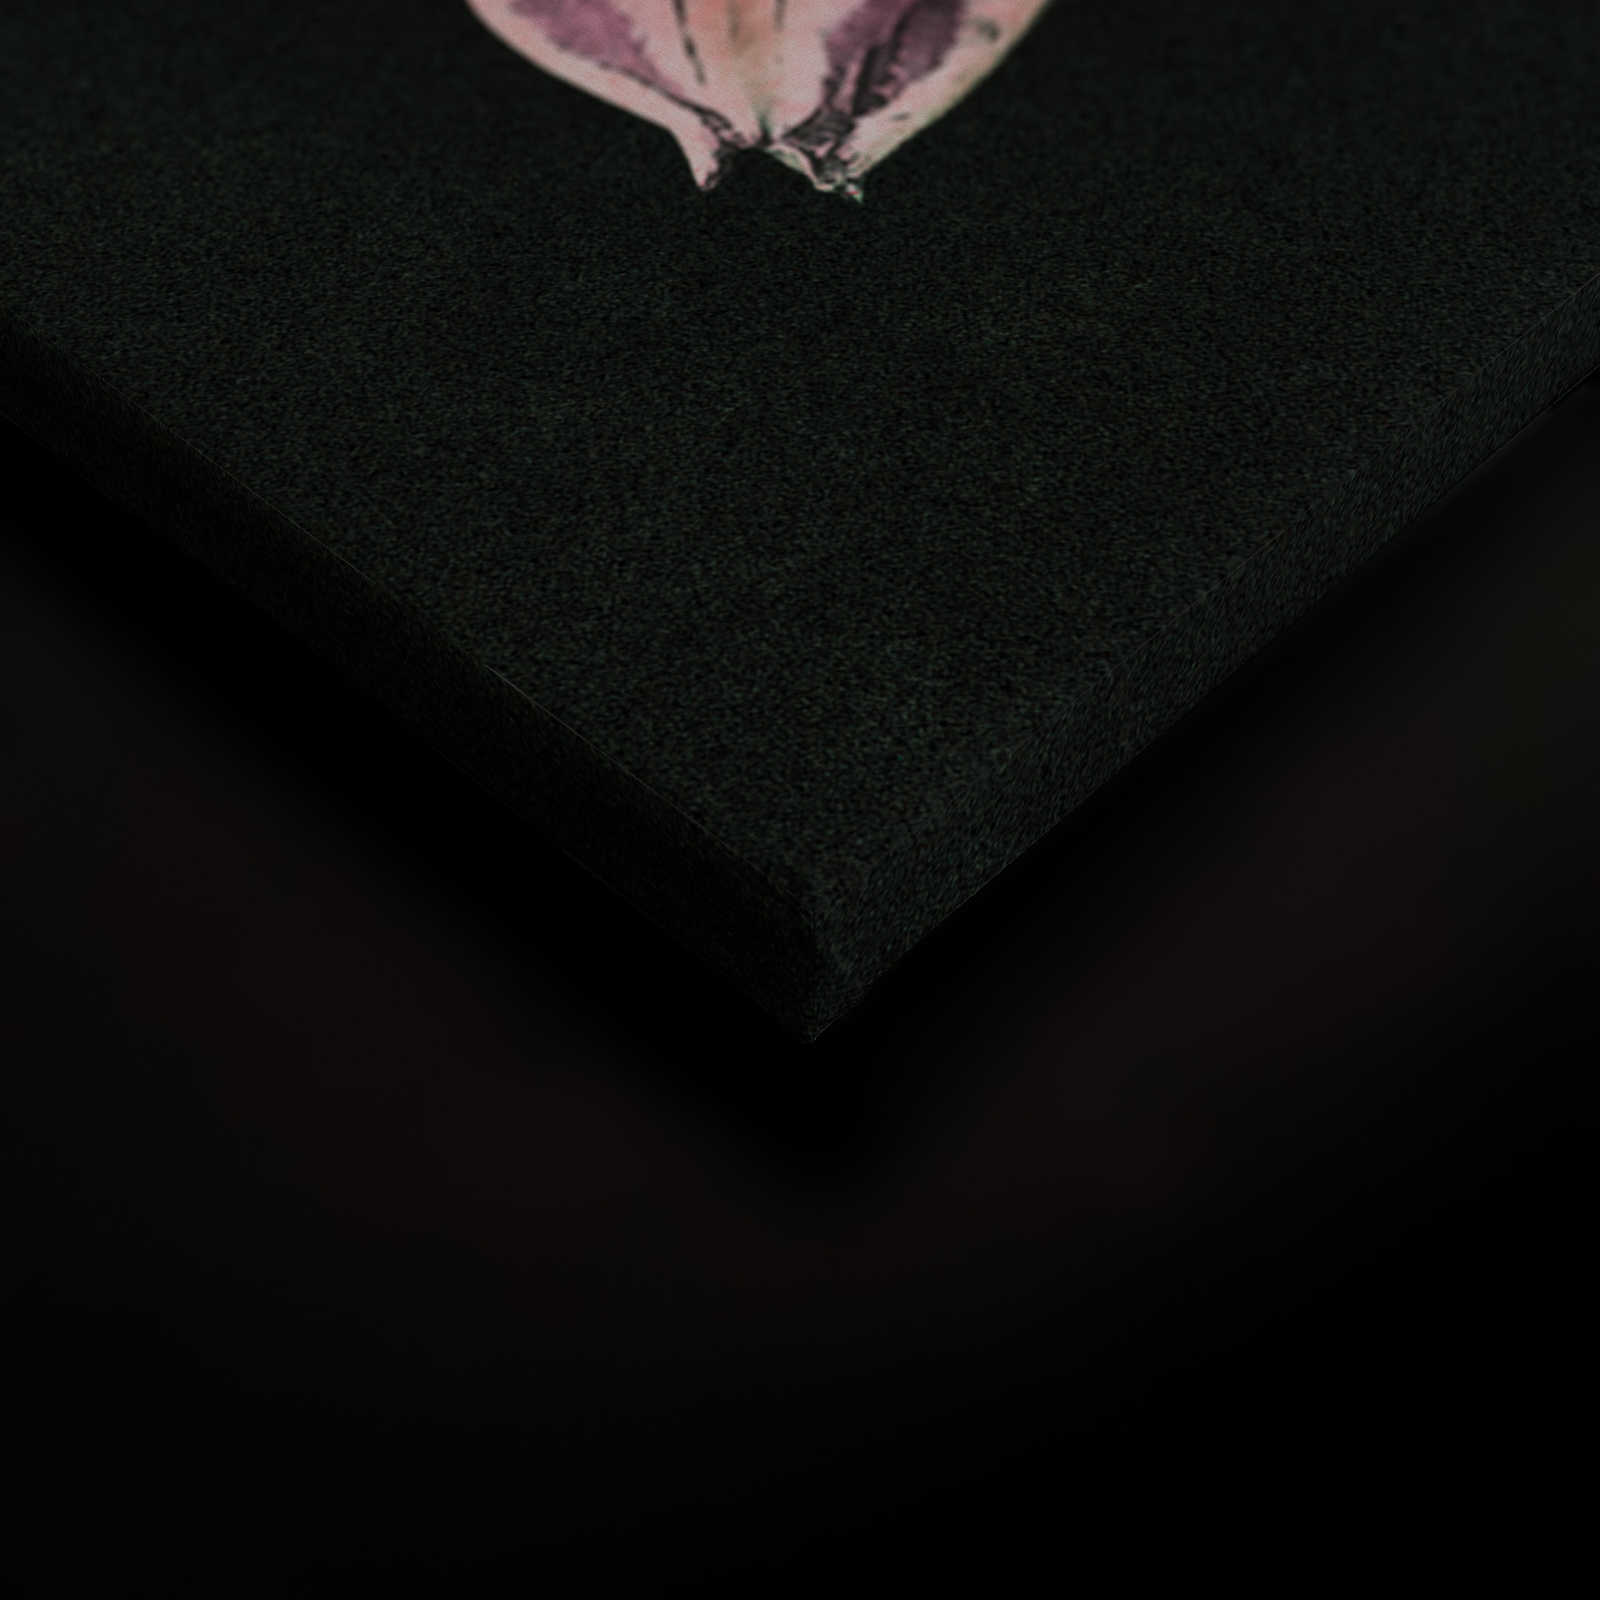             Drama queen 3 - Toile bouquet de fleurs romantique - À structure en carton - 0,90 m x 0,60 m
        